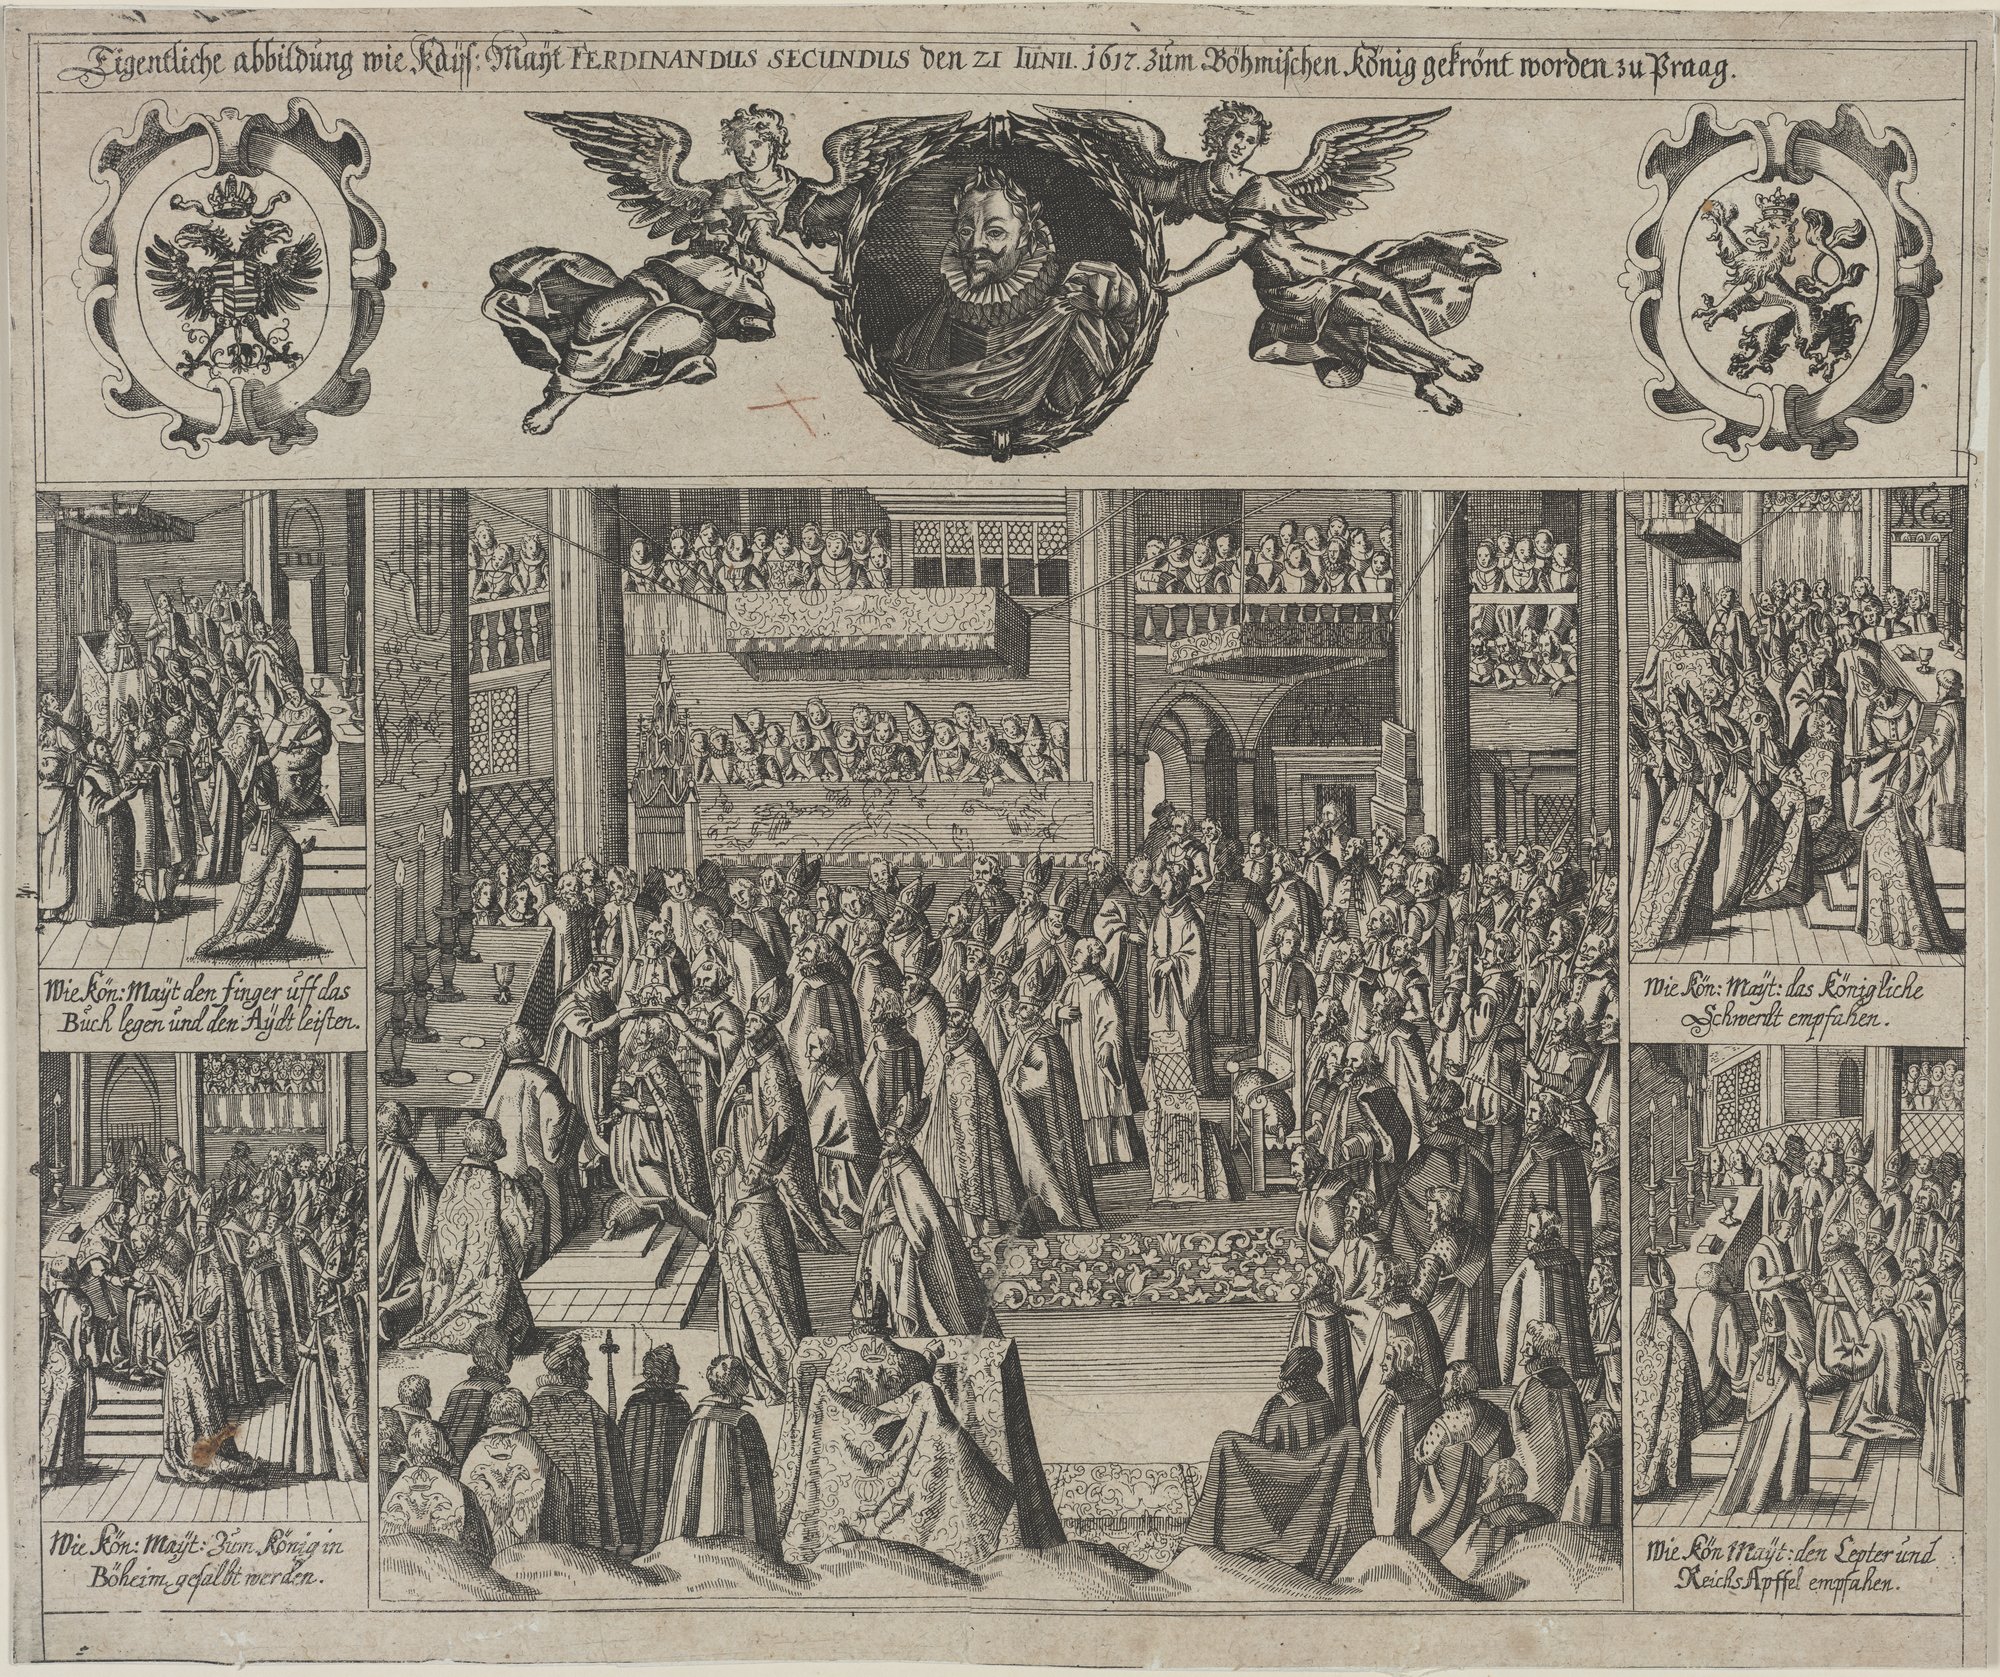 Eigentliche abbildung wie Kays: Mayt. FERDINANDUS SECUNDUS den 21 IUNII. 1617. zum Böhmischen König gekrönt zu Praag. (Kulturstiftung Sachsen-Anhalt Public Domain Mark)